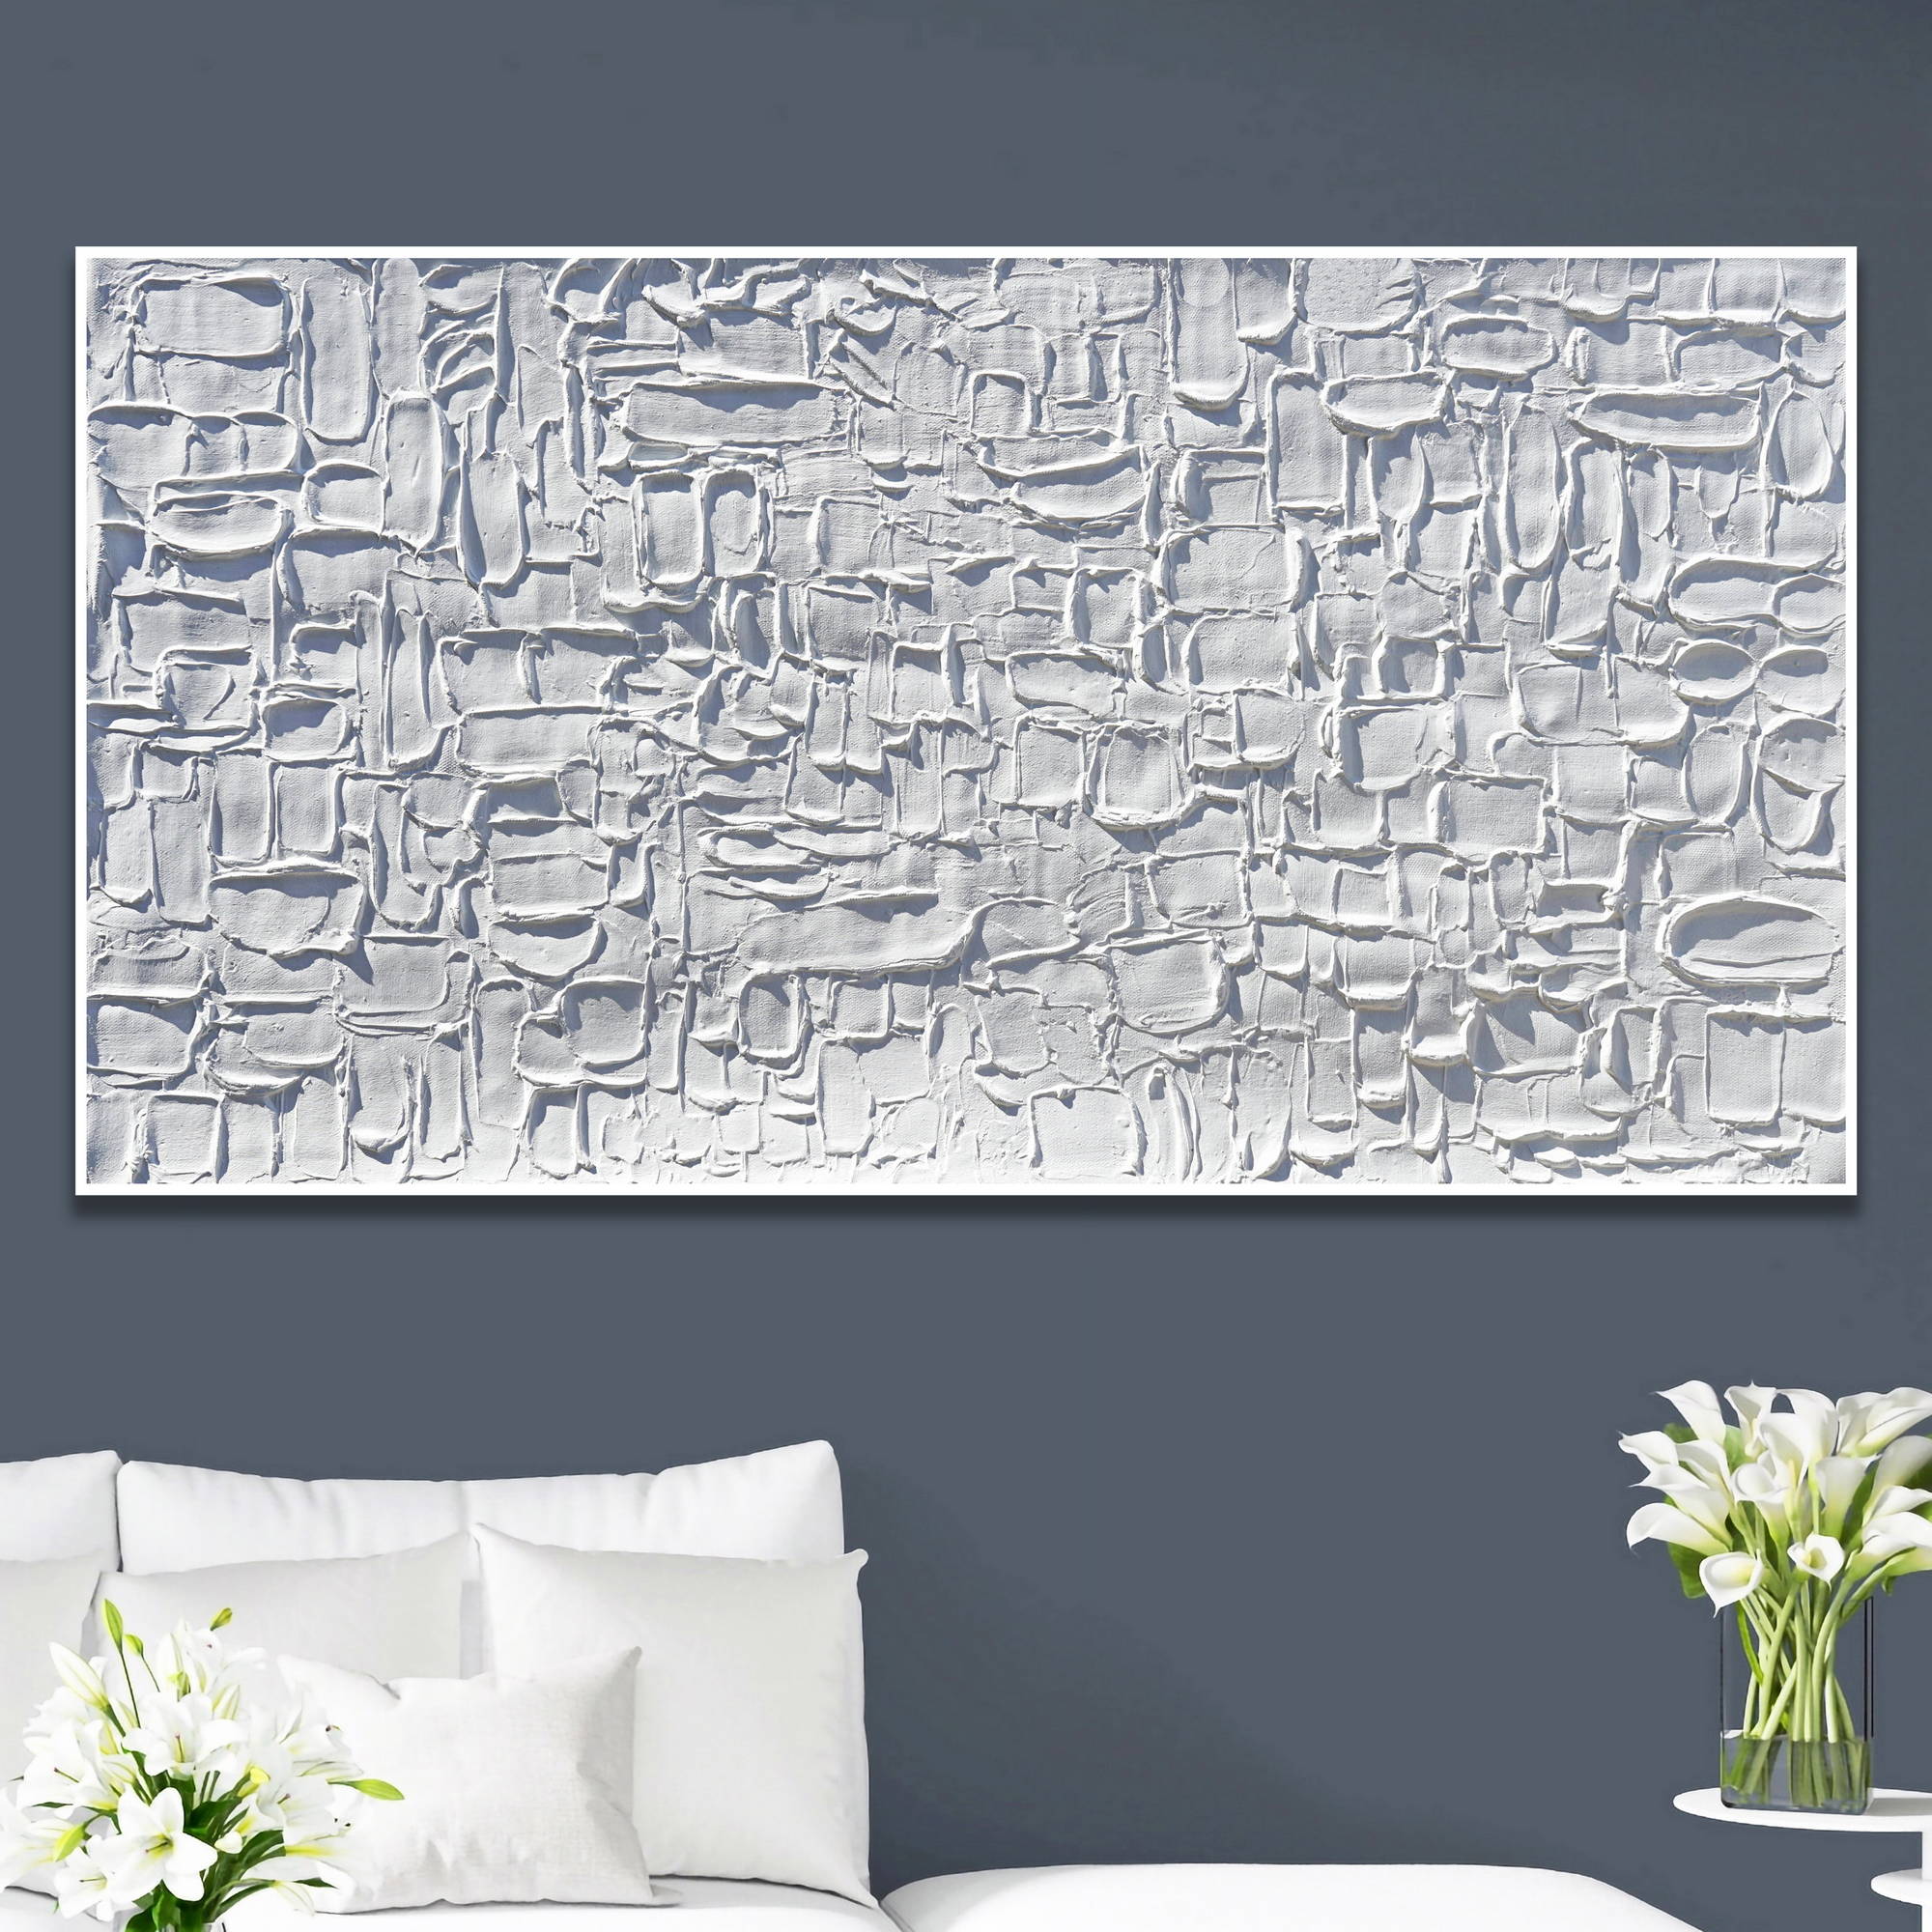 Quadro astratto bianco con texture tridimensionale appeso a parete grigia